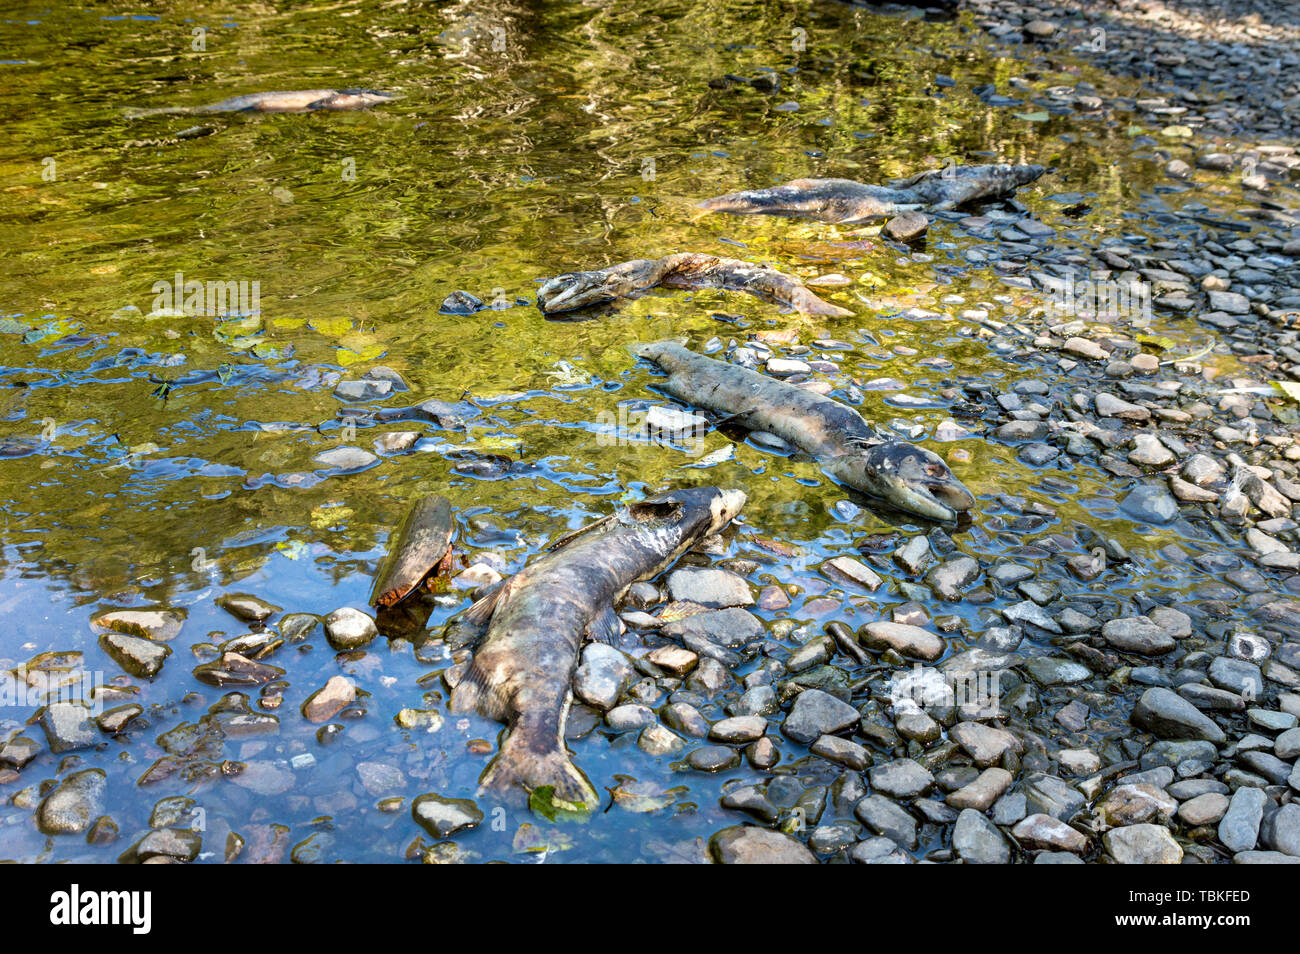 Morto il Salmone Chinook in Ketchikan Creek, Alaska. Tornando il salmone sono stati costretti a deporre le uova più a valle rispetto al solito a causa del basso livello dell'acqua. Foto Stock